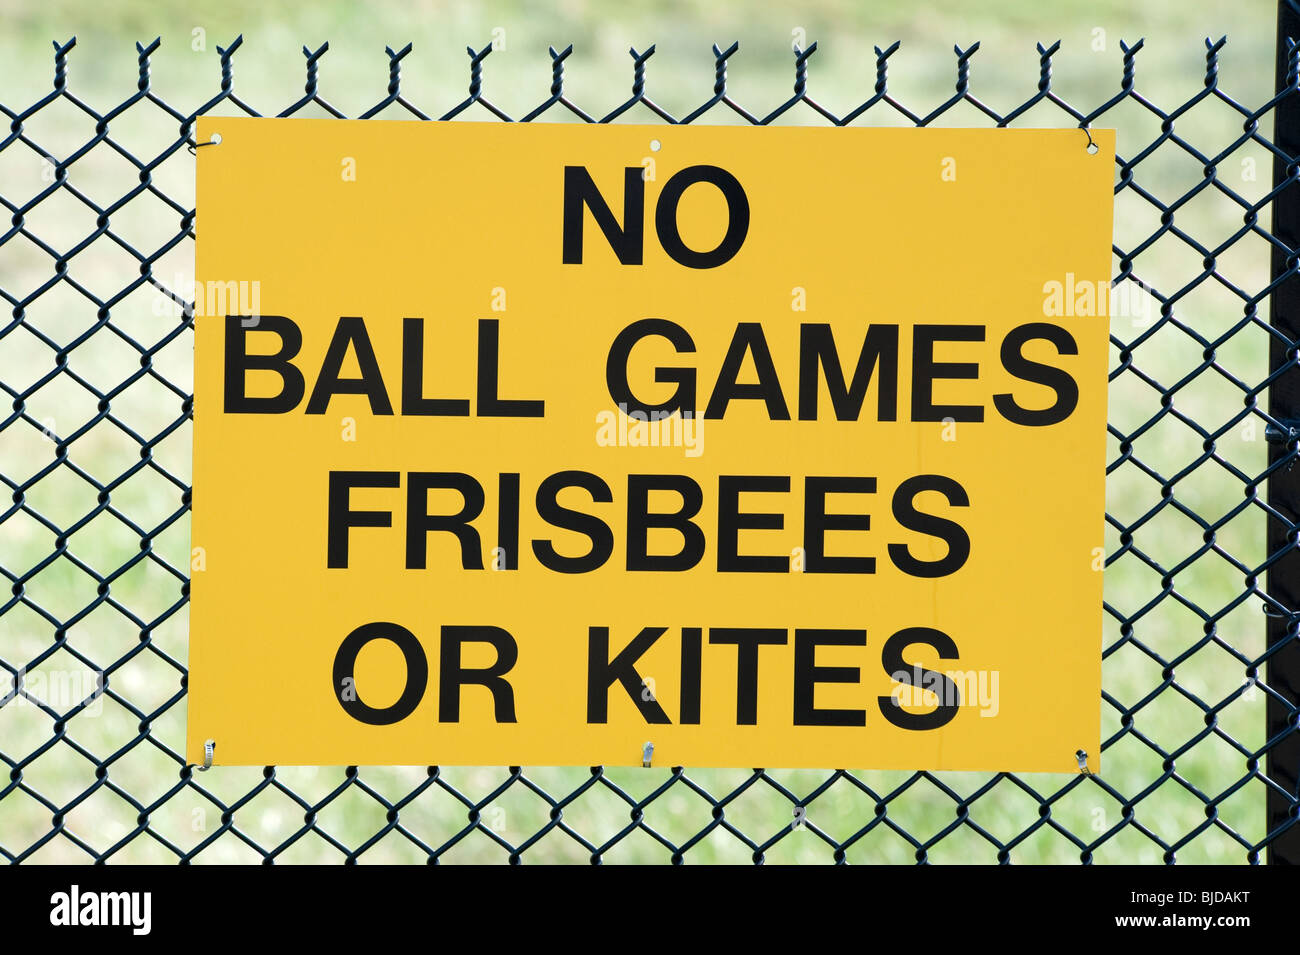 No ball games frisbees or kites Stock Photo